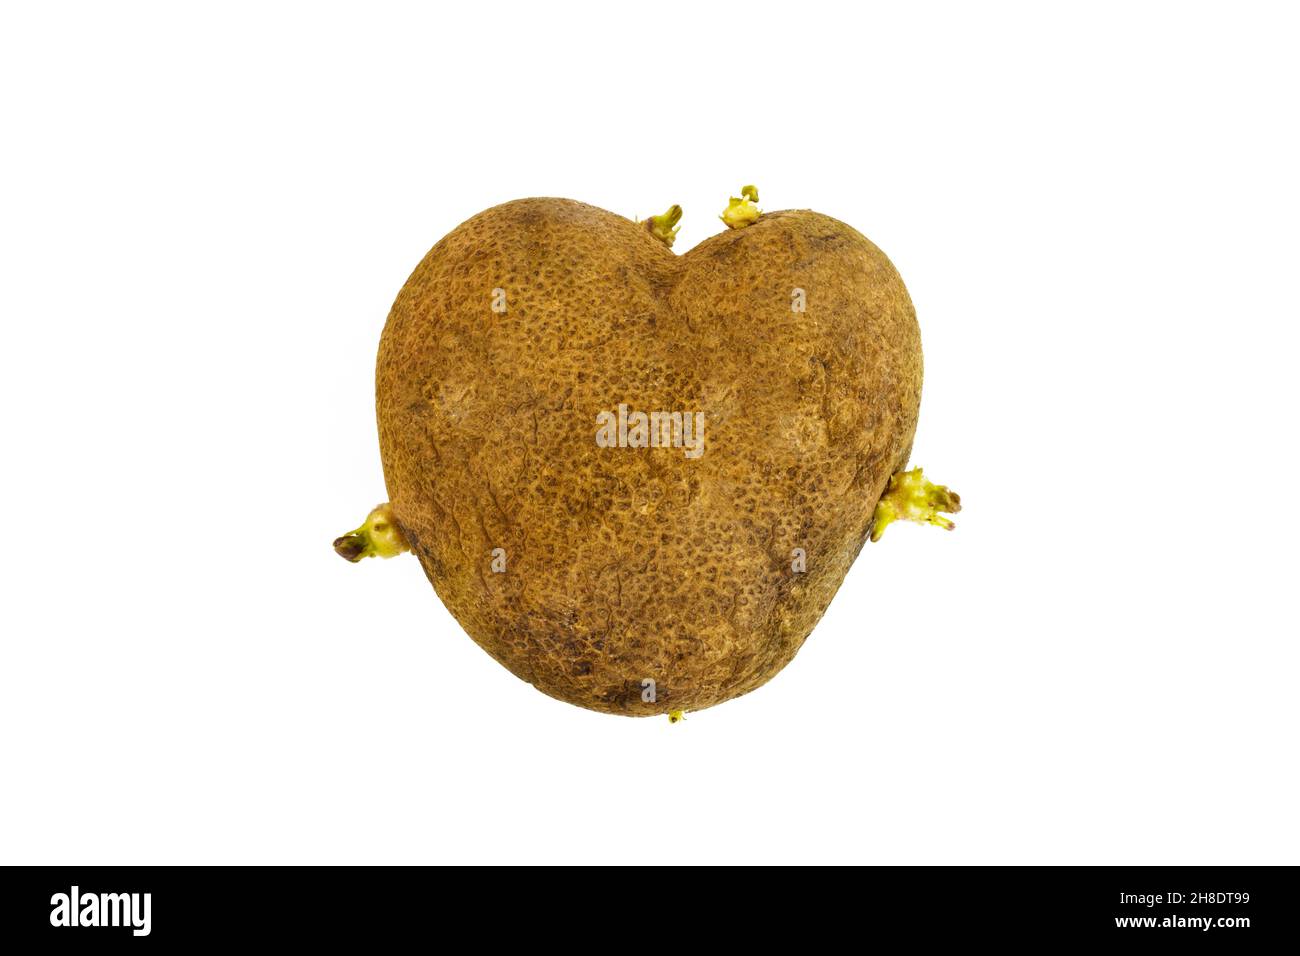 Laides pomme de terre en forme de coeur sur fond blanc.Pomme de terre germée concept amusant, anormal de déchets de légumes ou de nourriture. Banque D'Images